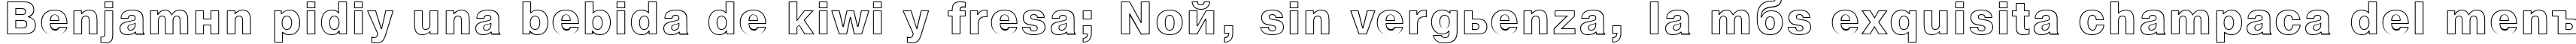 Пример написания шрифтом NTOutline текста на испанском